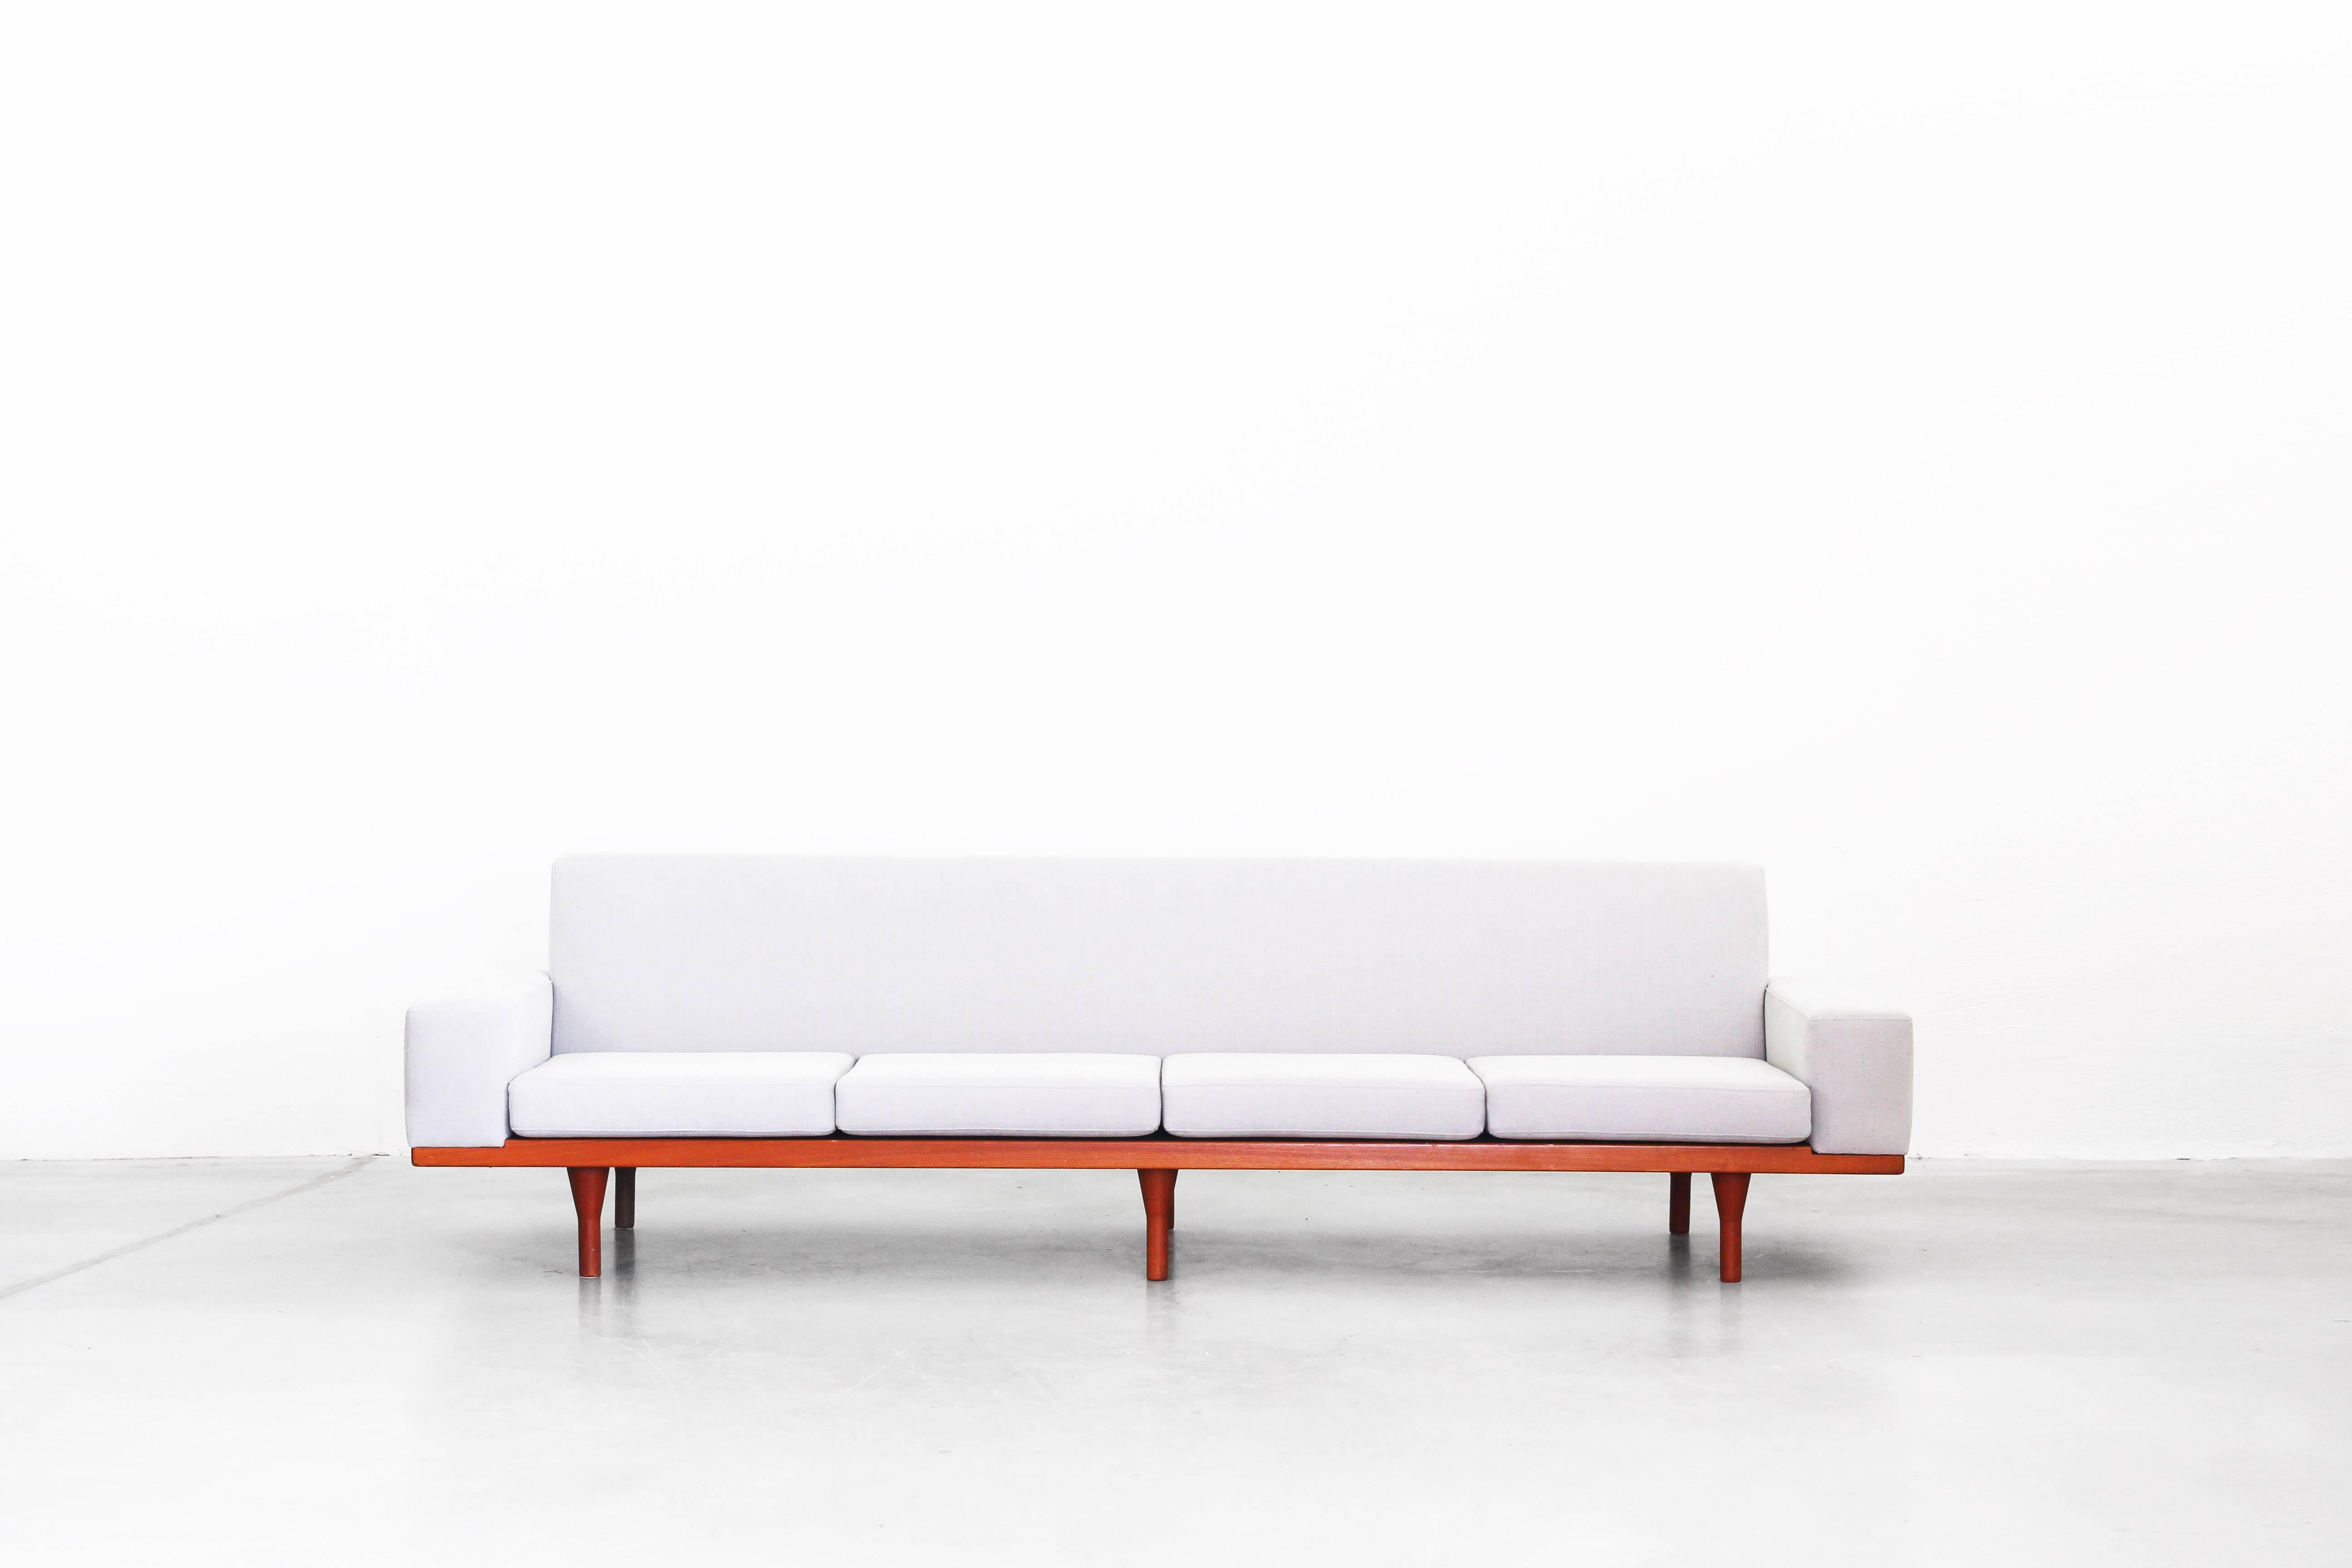 Sehr schönes Sofa:: entworfen von Illum Wikkelsø und hergestellt von Søren Willadsen in den 1960er Jahren. Dieses Sofa befindet sich in einem ausgezeichneten Zustand ohne jegliche Schäden. Es ist neu gepolstert mit einem hochwertigen Stoff in